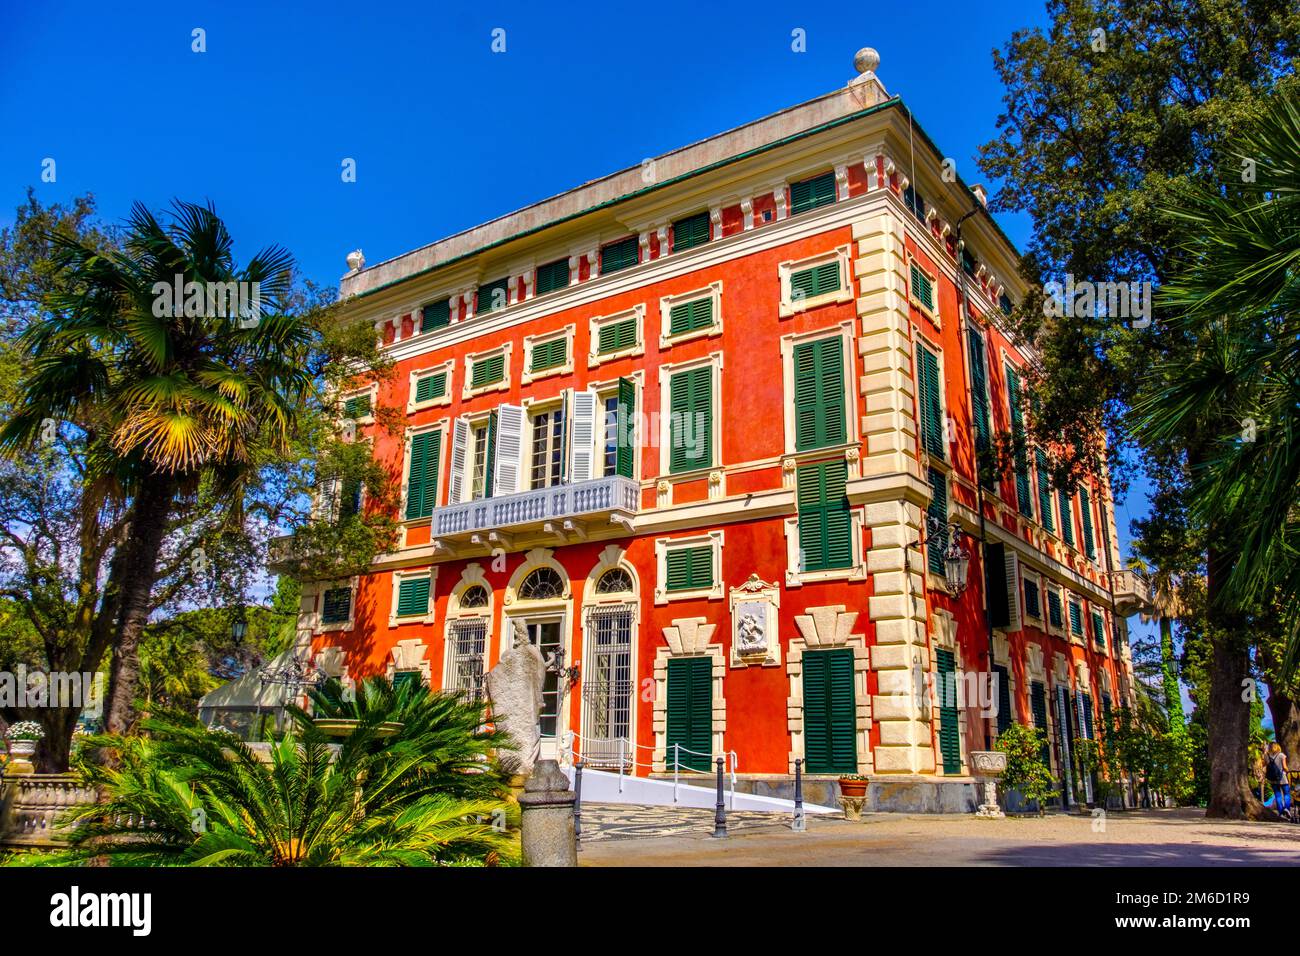 Villa romantique Durazzo - Gênes - Ligurie région - Italie Banque D'Images